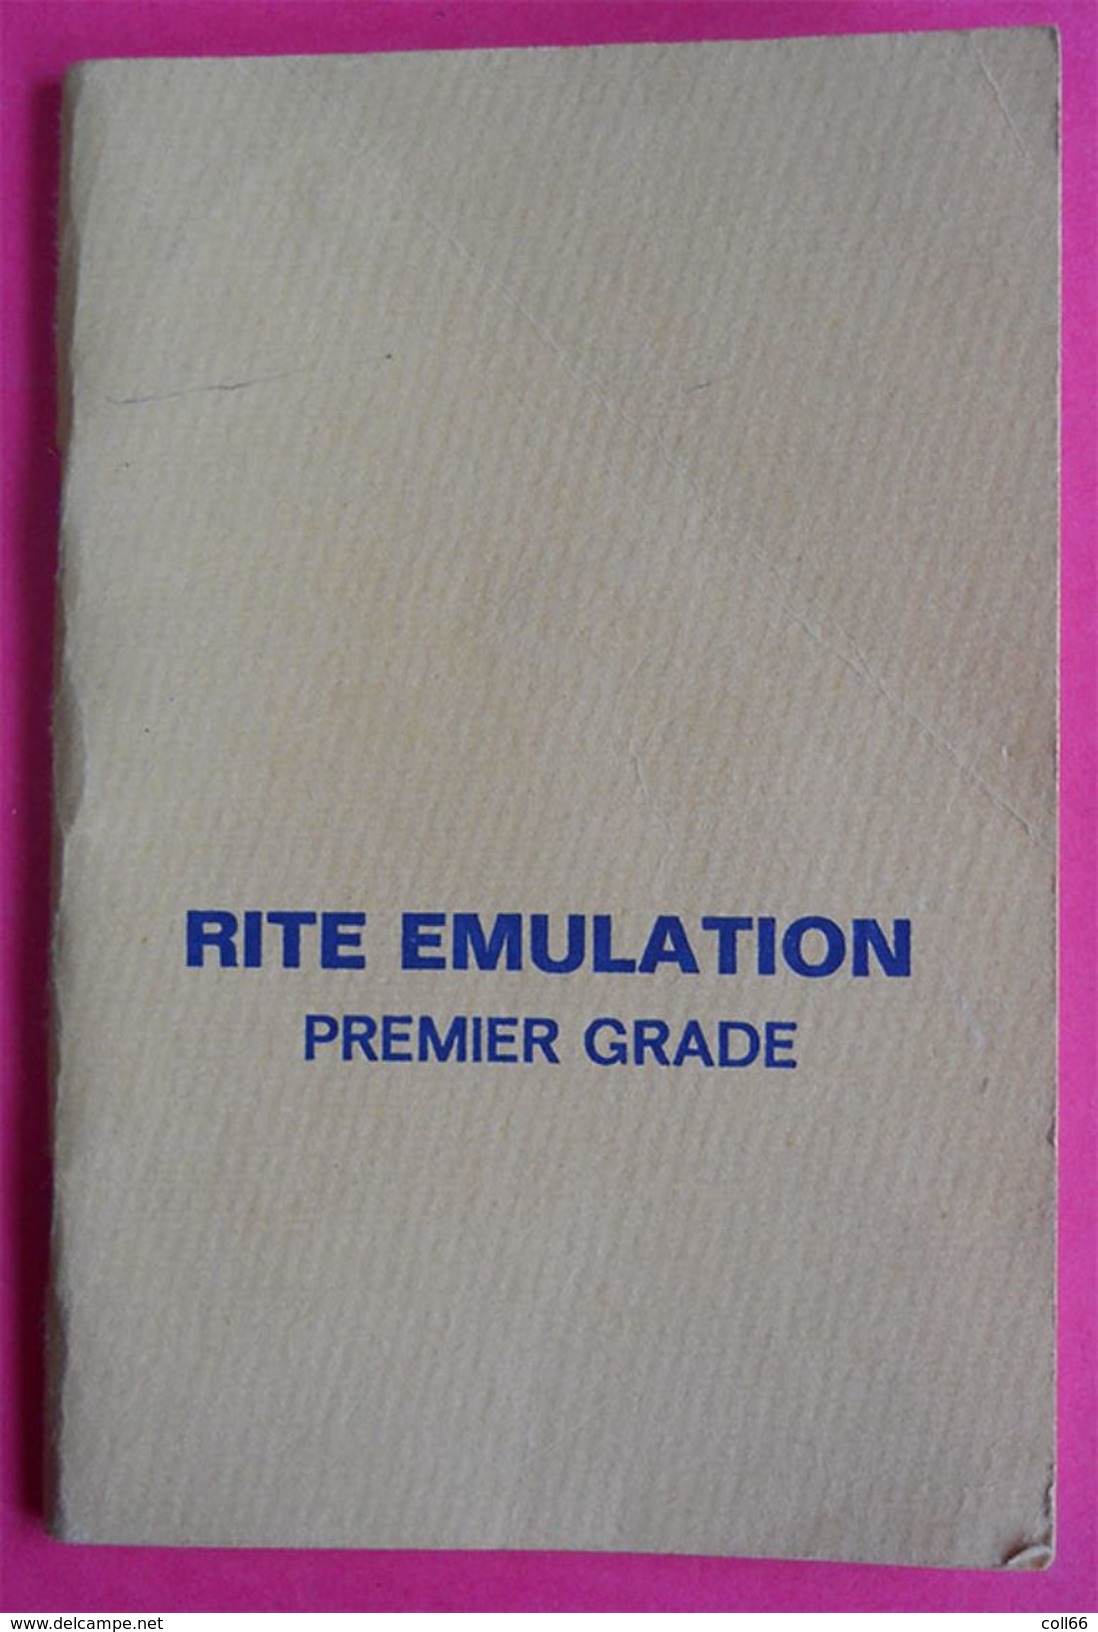 Livret Rite Emulation 1er Grade Apprenti GLNF1980 éditeur Bd Bineau Paris 62 Pages Franc-maçonnerie Freemason 15x10cms - Esotérisme